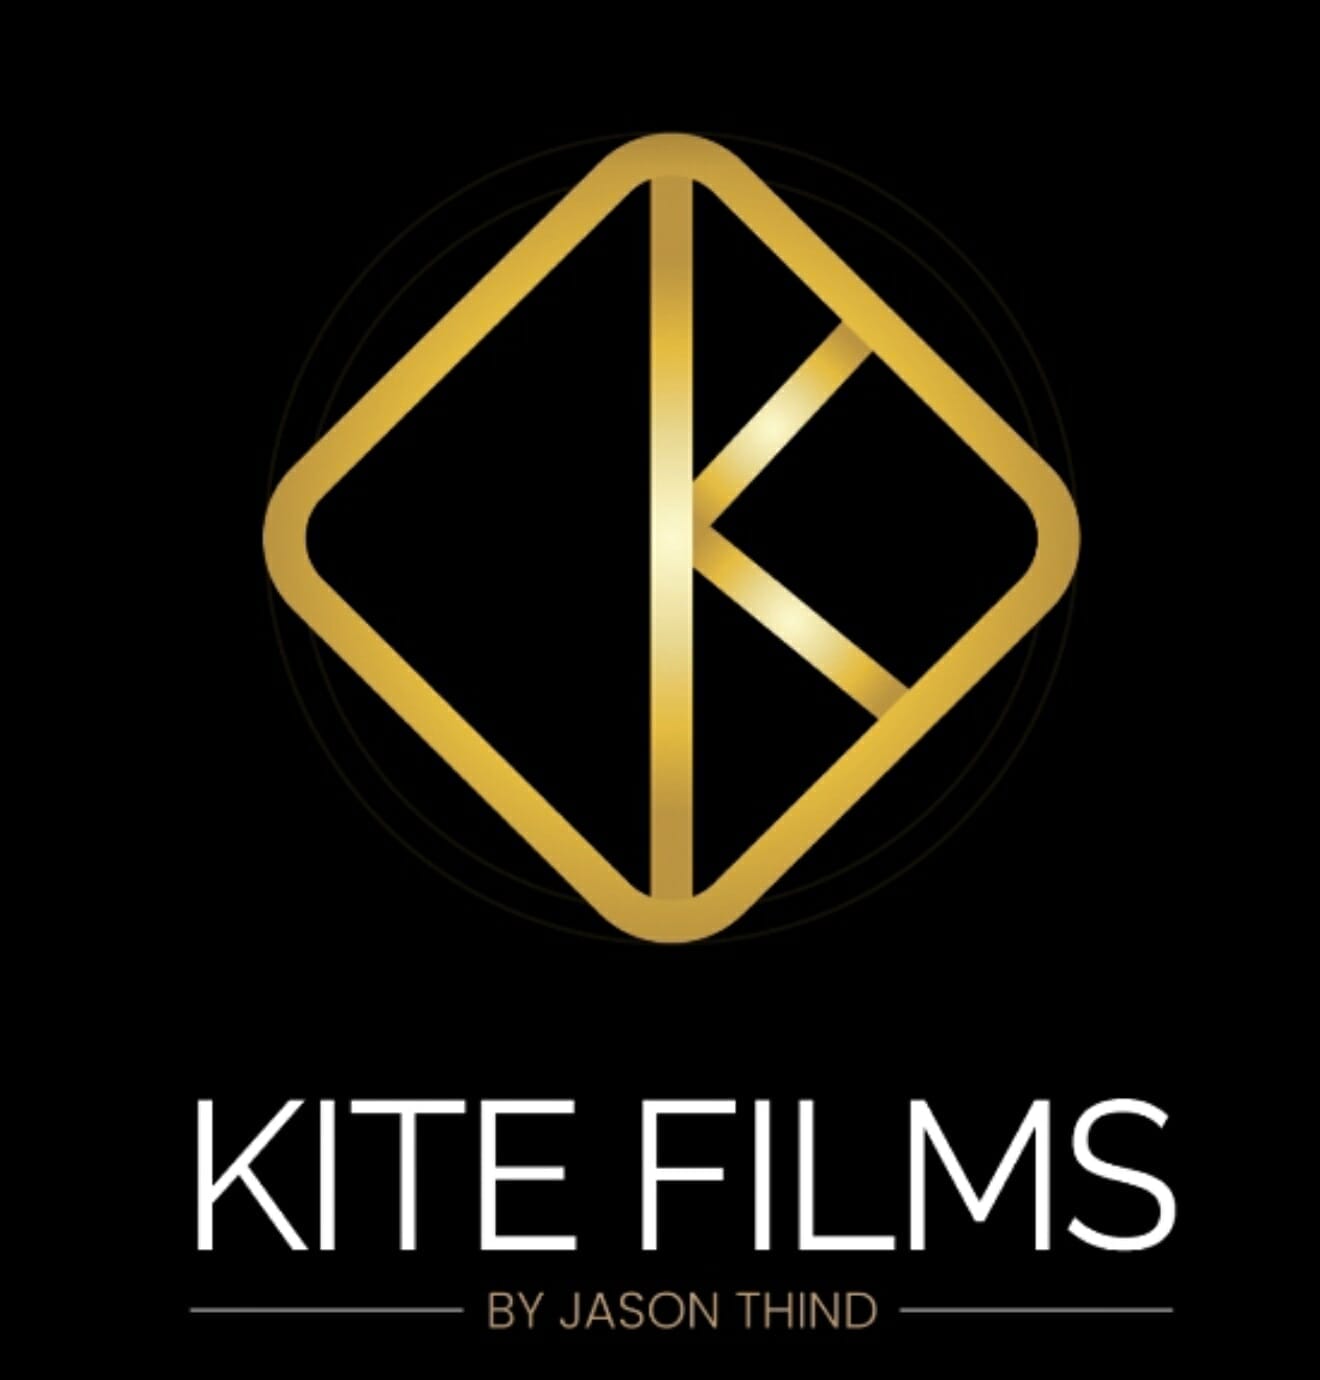 Kite films